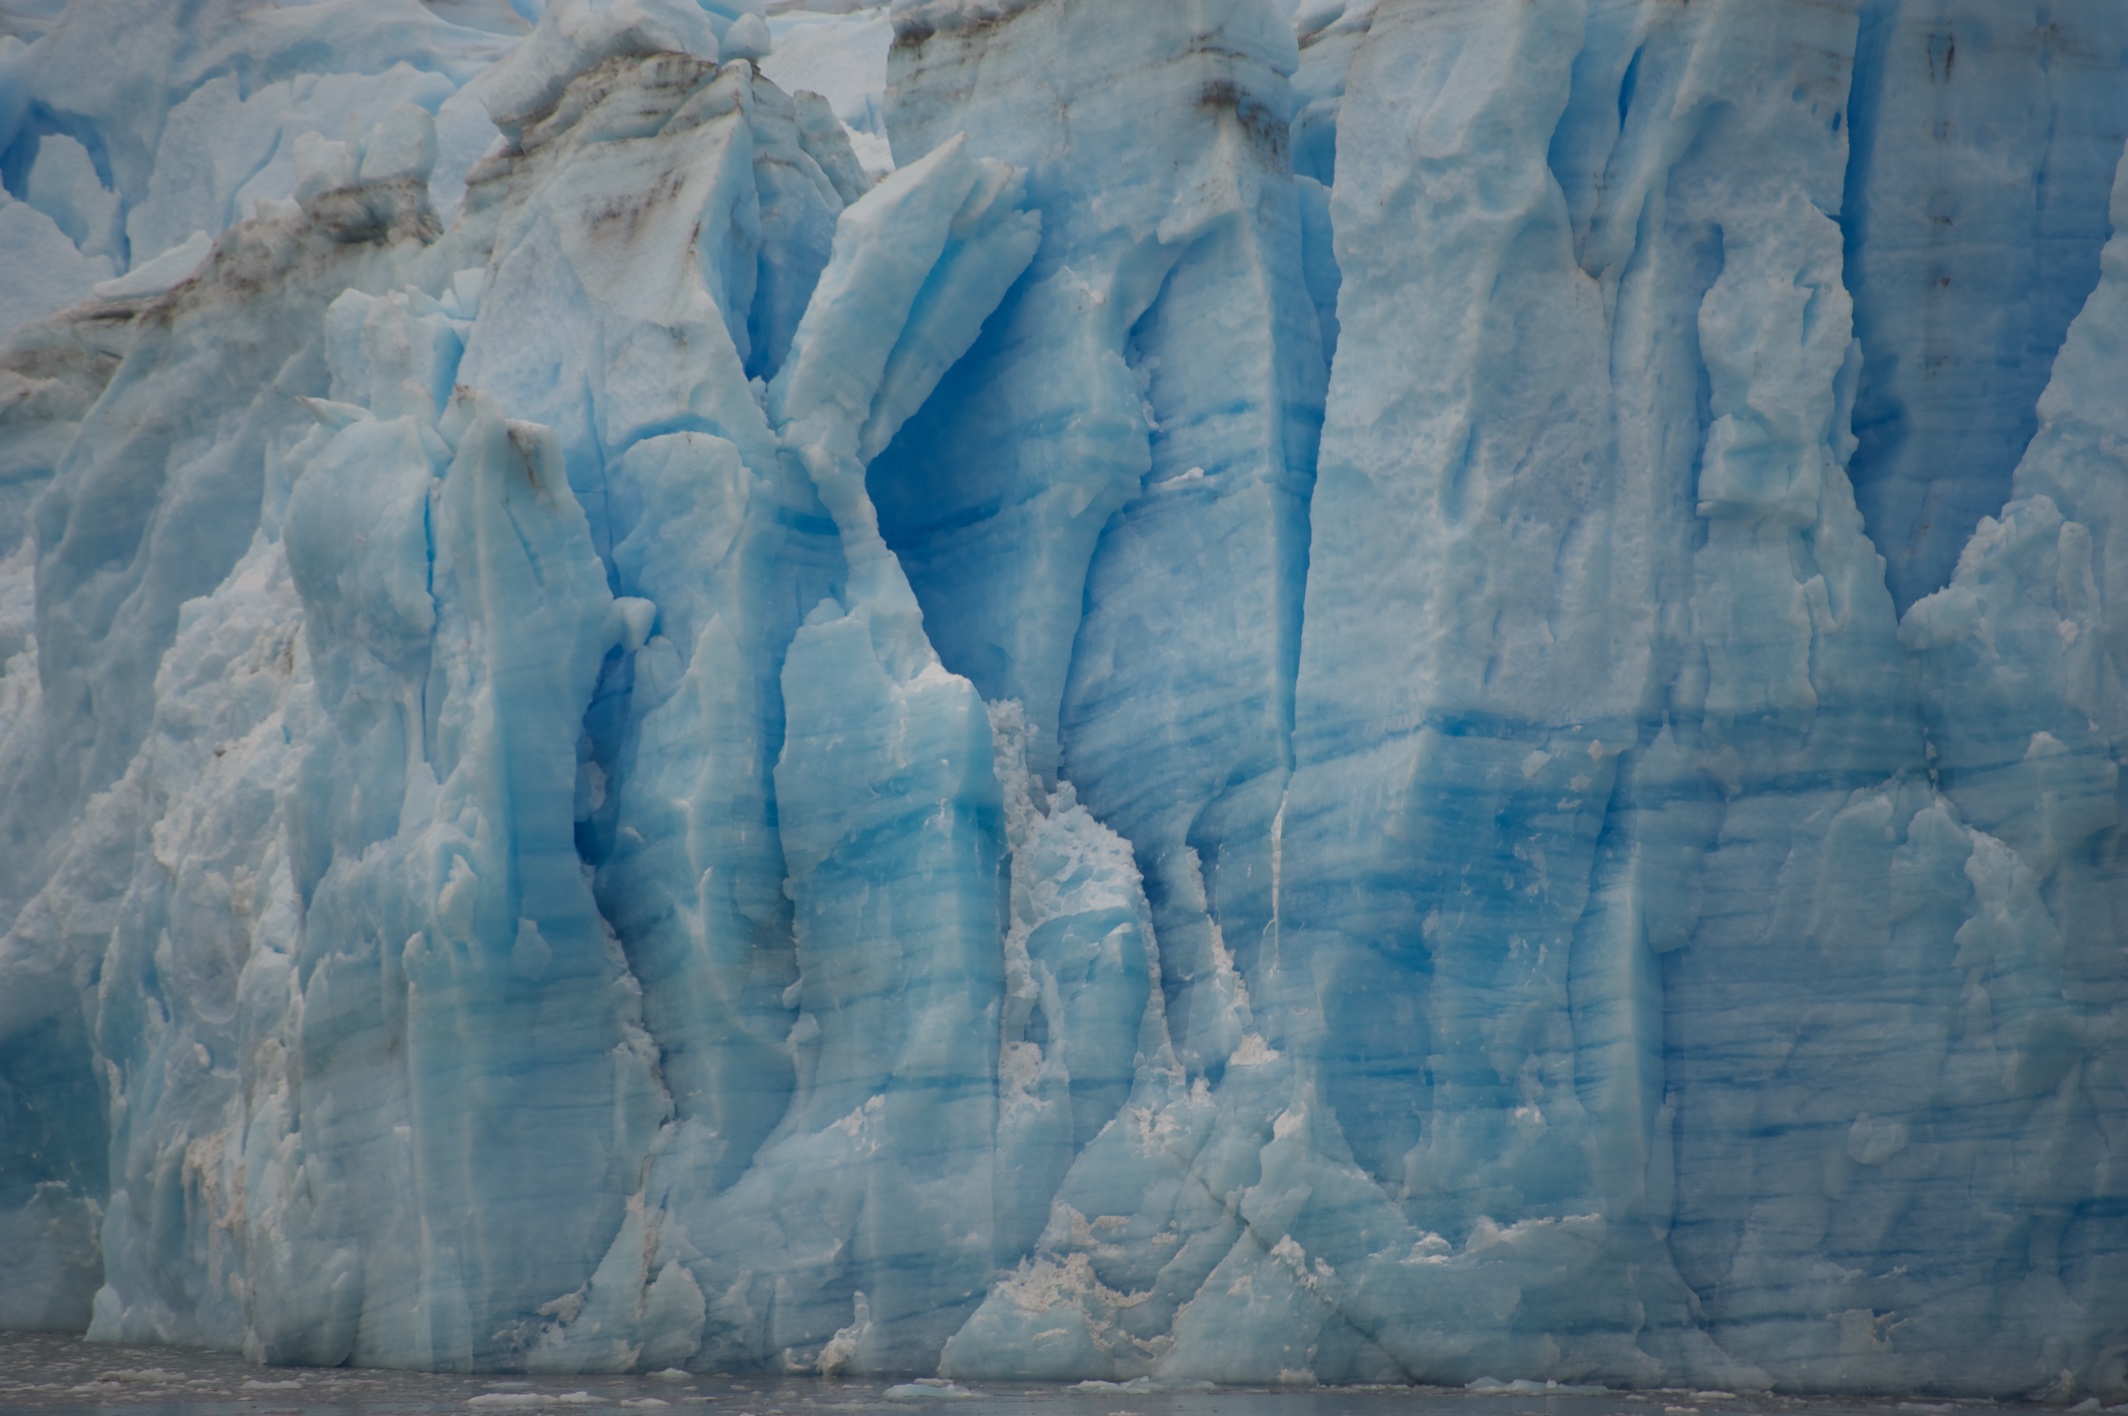  Pio X1 Glacier, Patagonia, Chile 